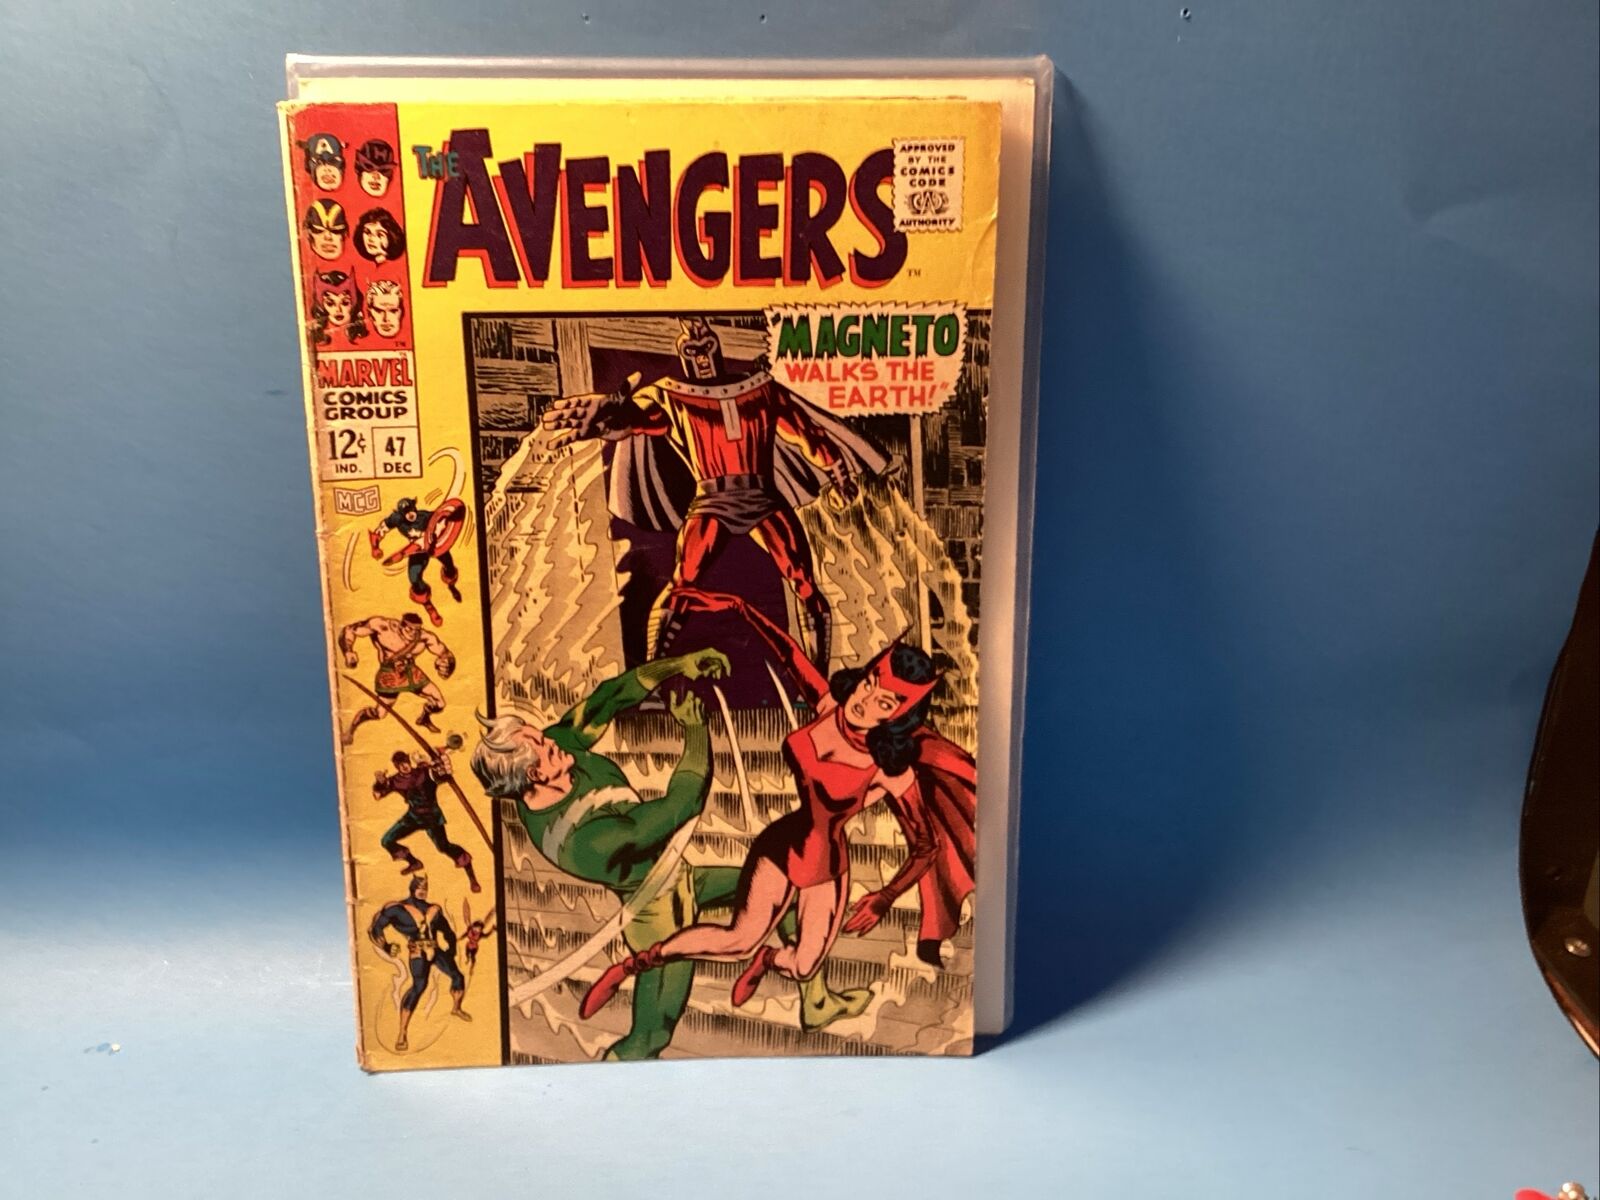 The Avengers #47 (Dec 1967 Marvel Comics) MAGNETO Walks The Earth In FN/ VF